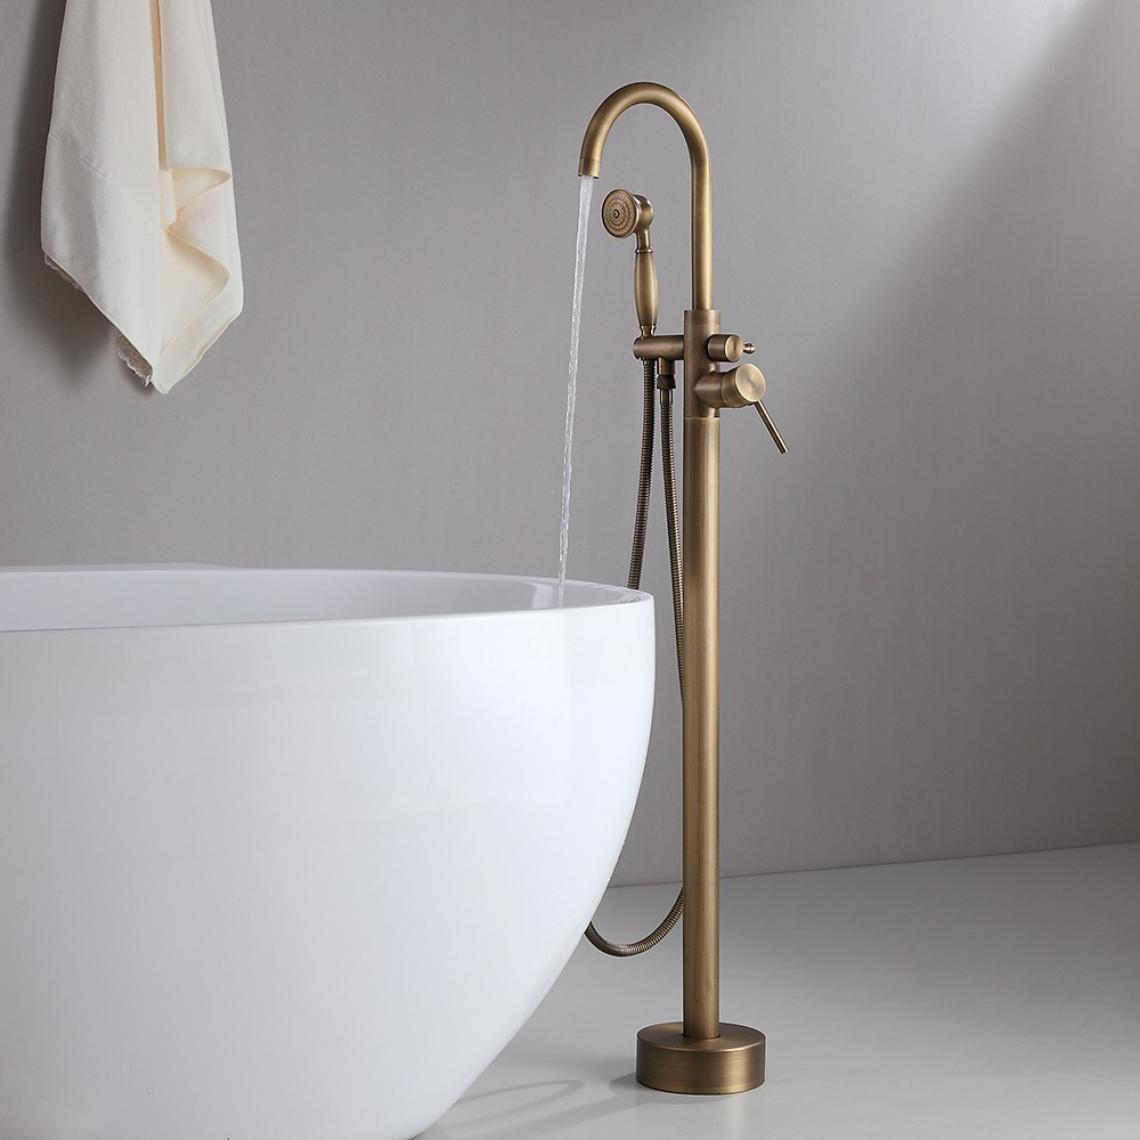 Lookshop - Robinet de baignoire sur pied classique en bronze avec douchette - Mitigeur douche